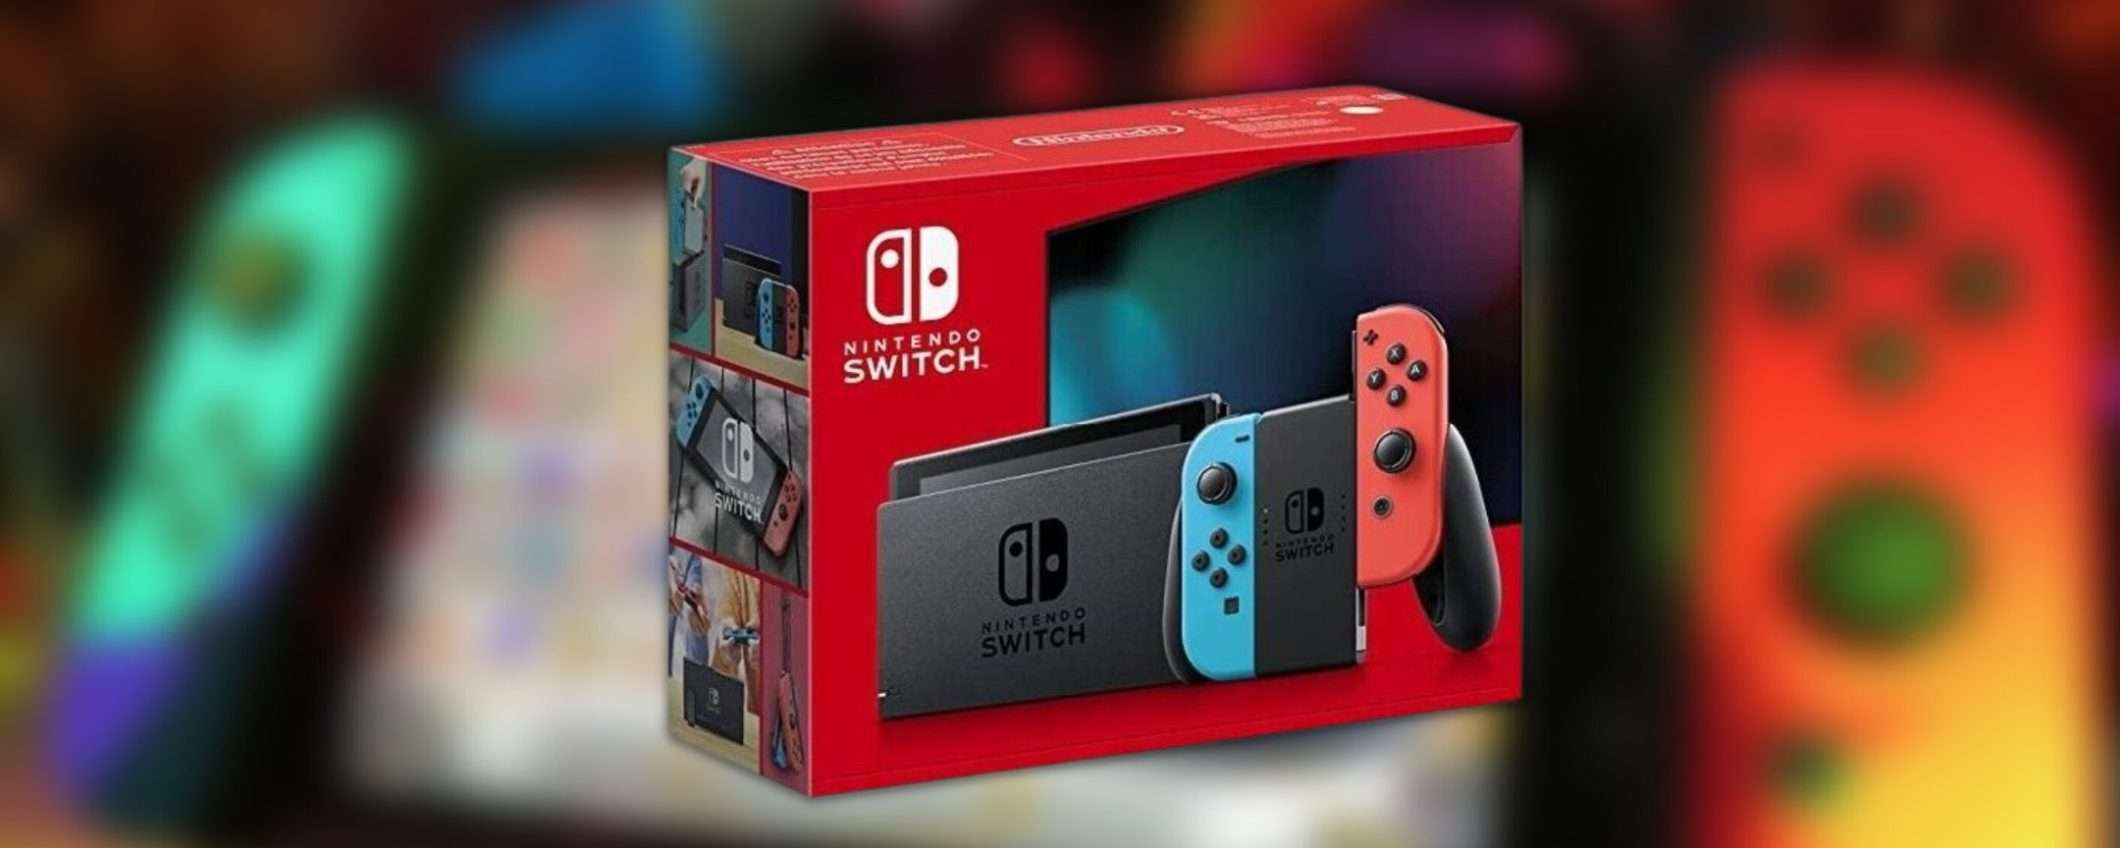 Nuova Nintendo Switch con batteria migliorata: solo 249€ in offerta